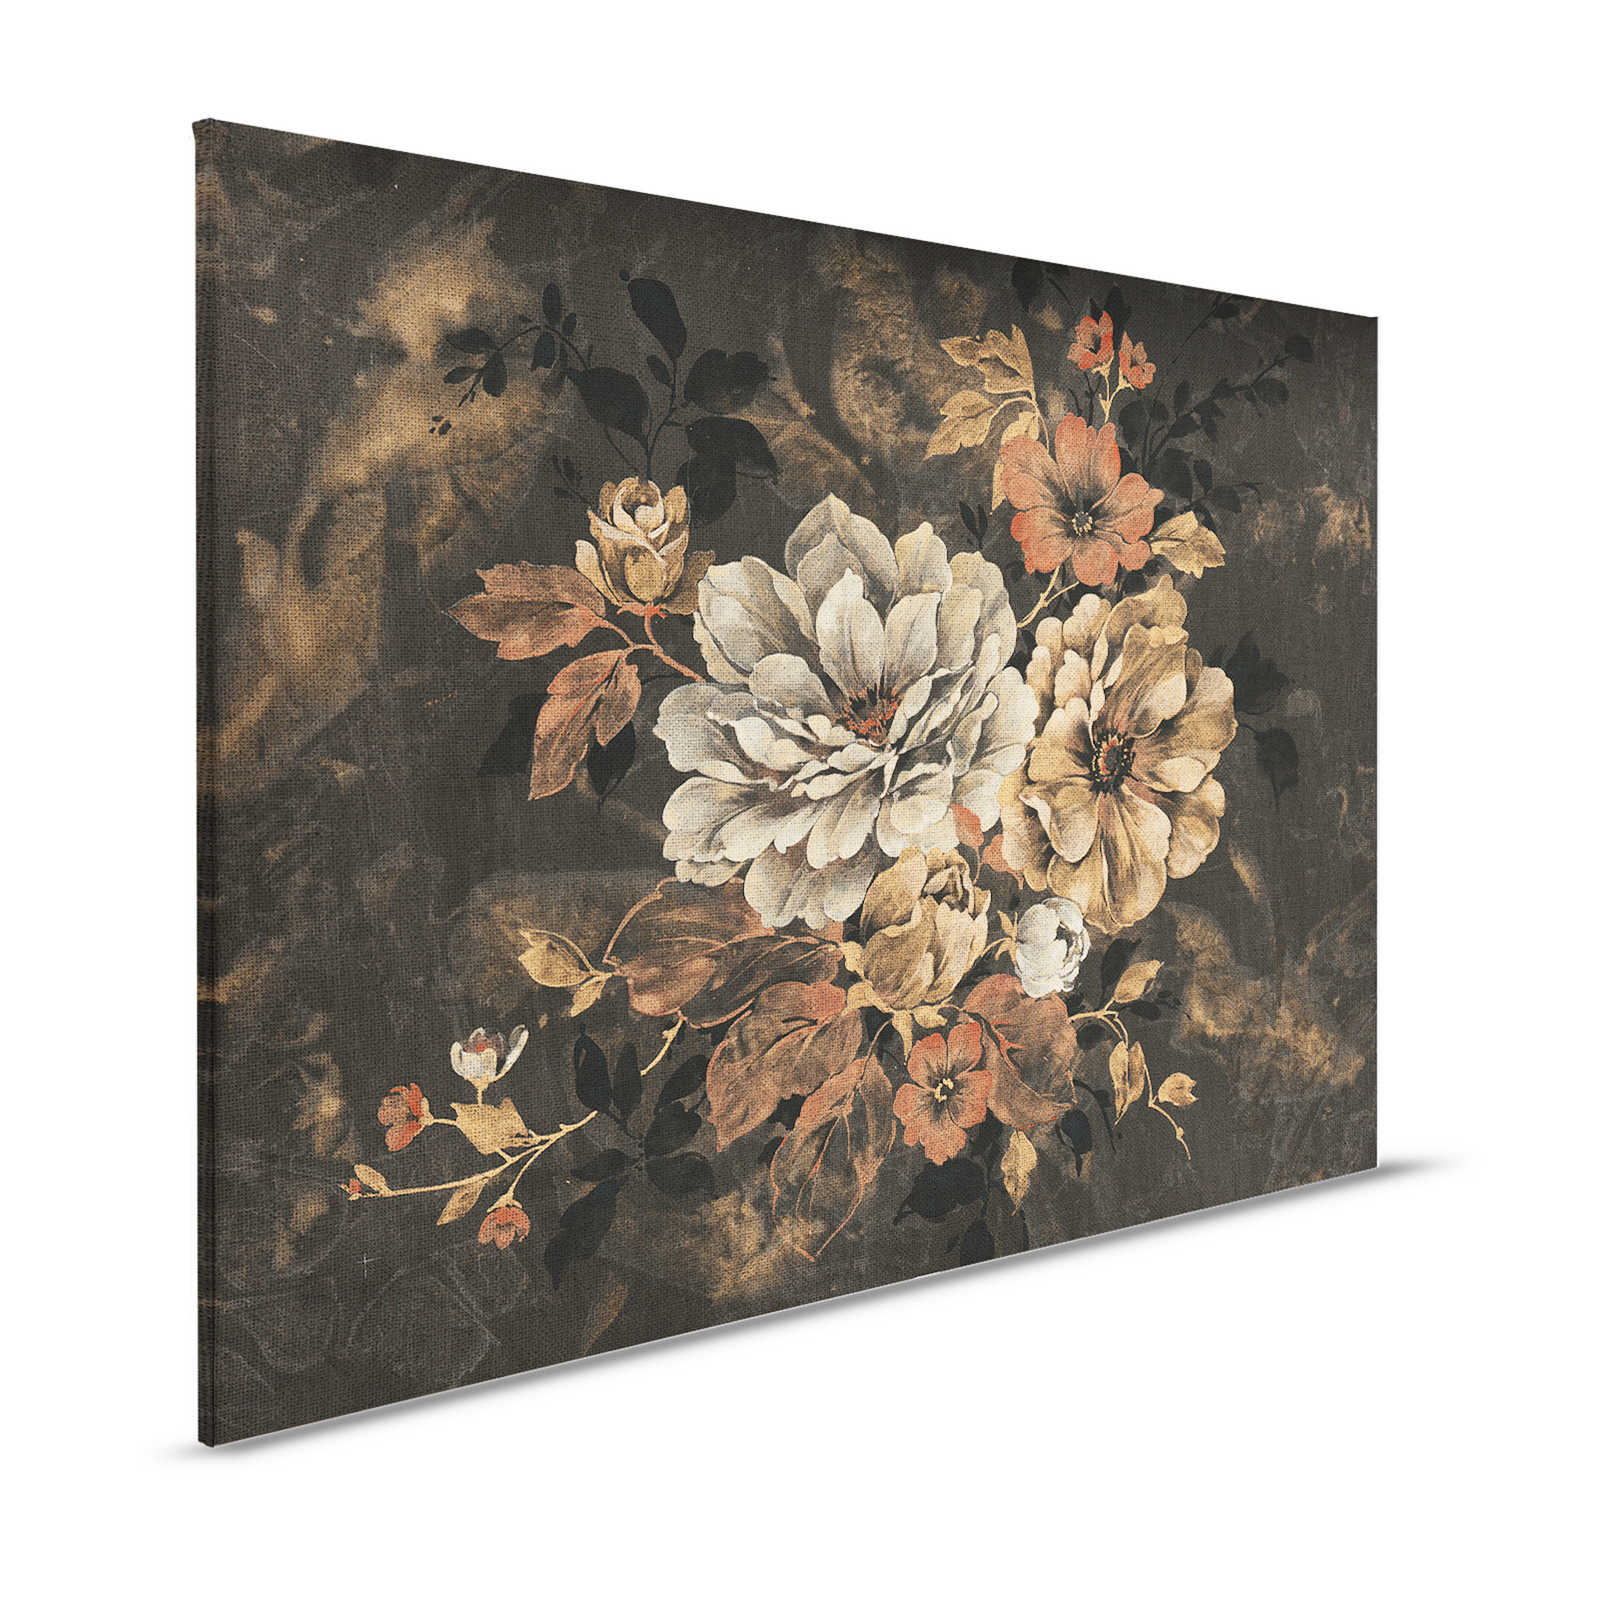 Quadro su tela con fiori, pittura a olio in stile vintage - 1,20 m x 0,80 m
